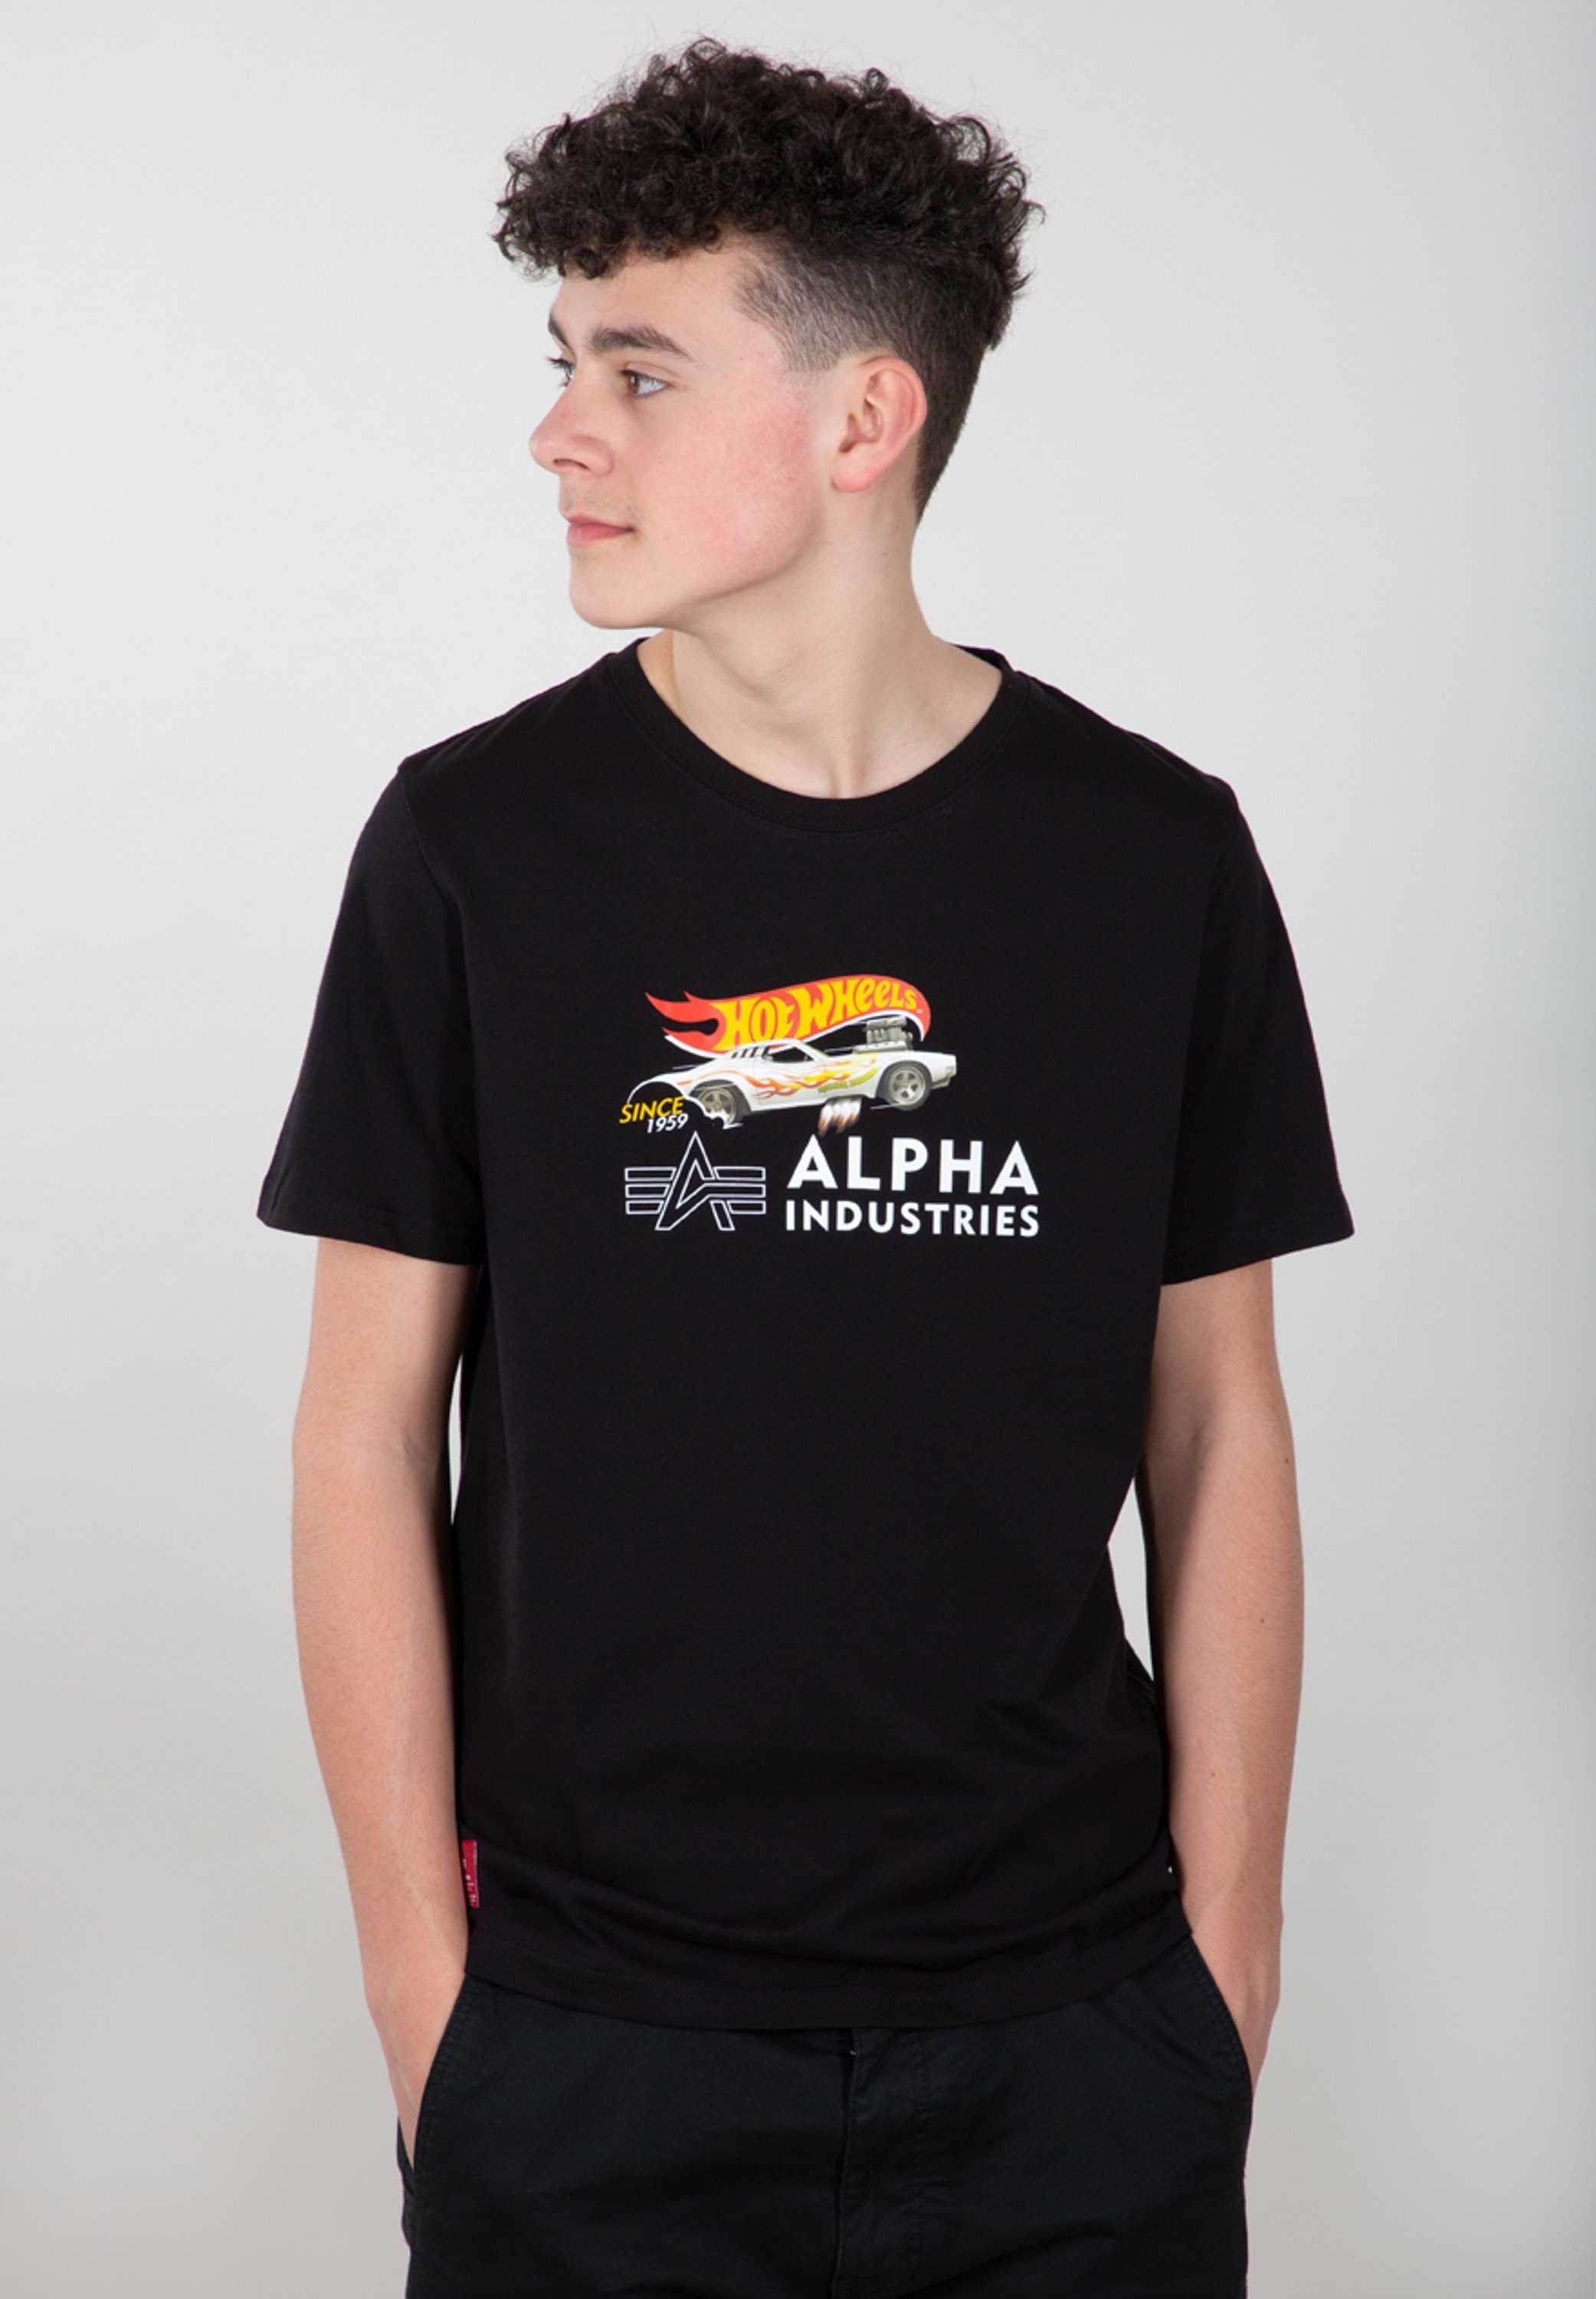 Alpha Industries T-shirt Kids T-Shirts Rodger Dodger T Kids Teens